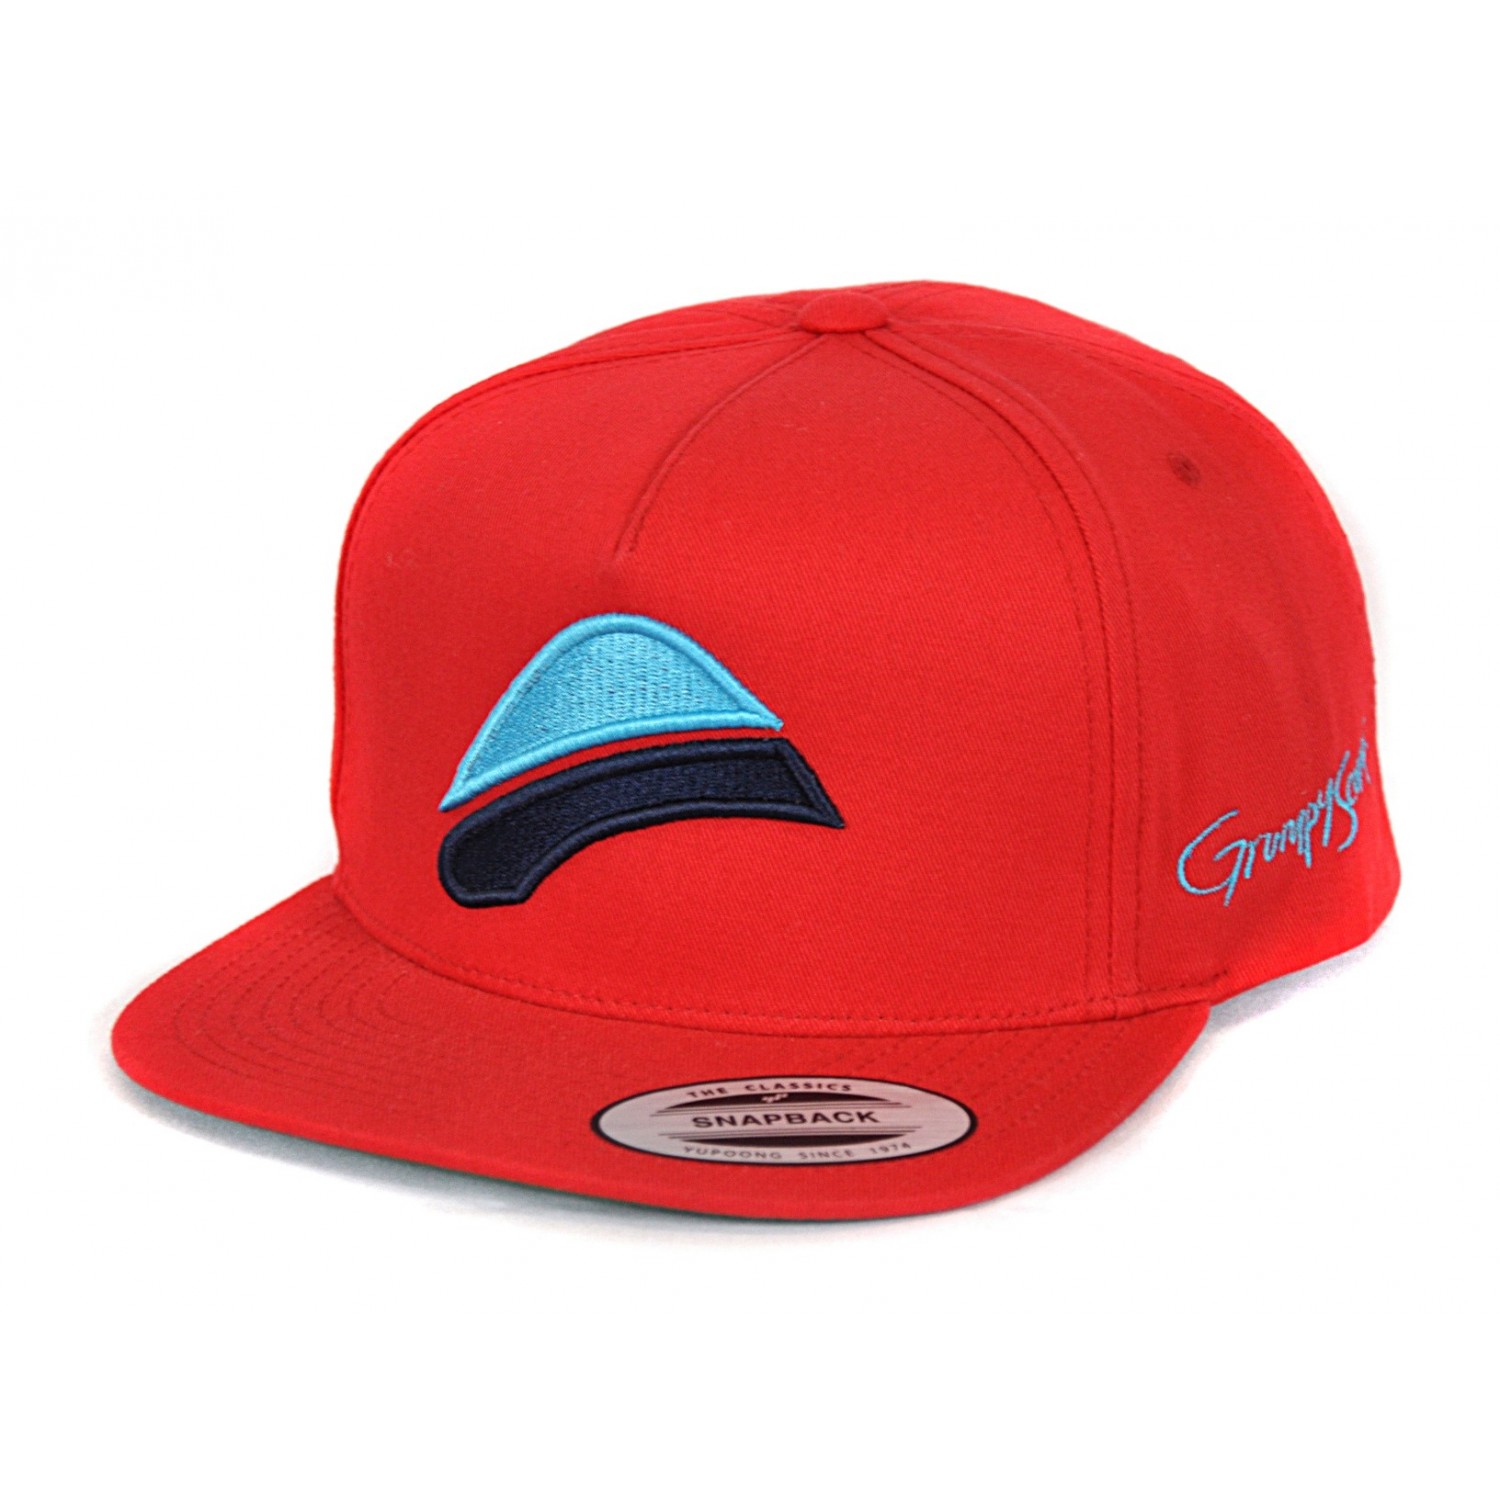 RED DAWN cap